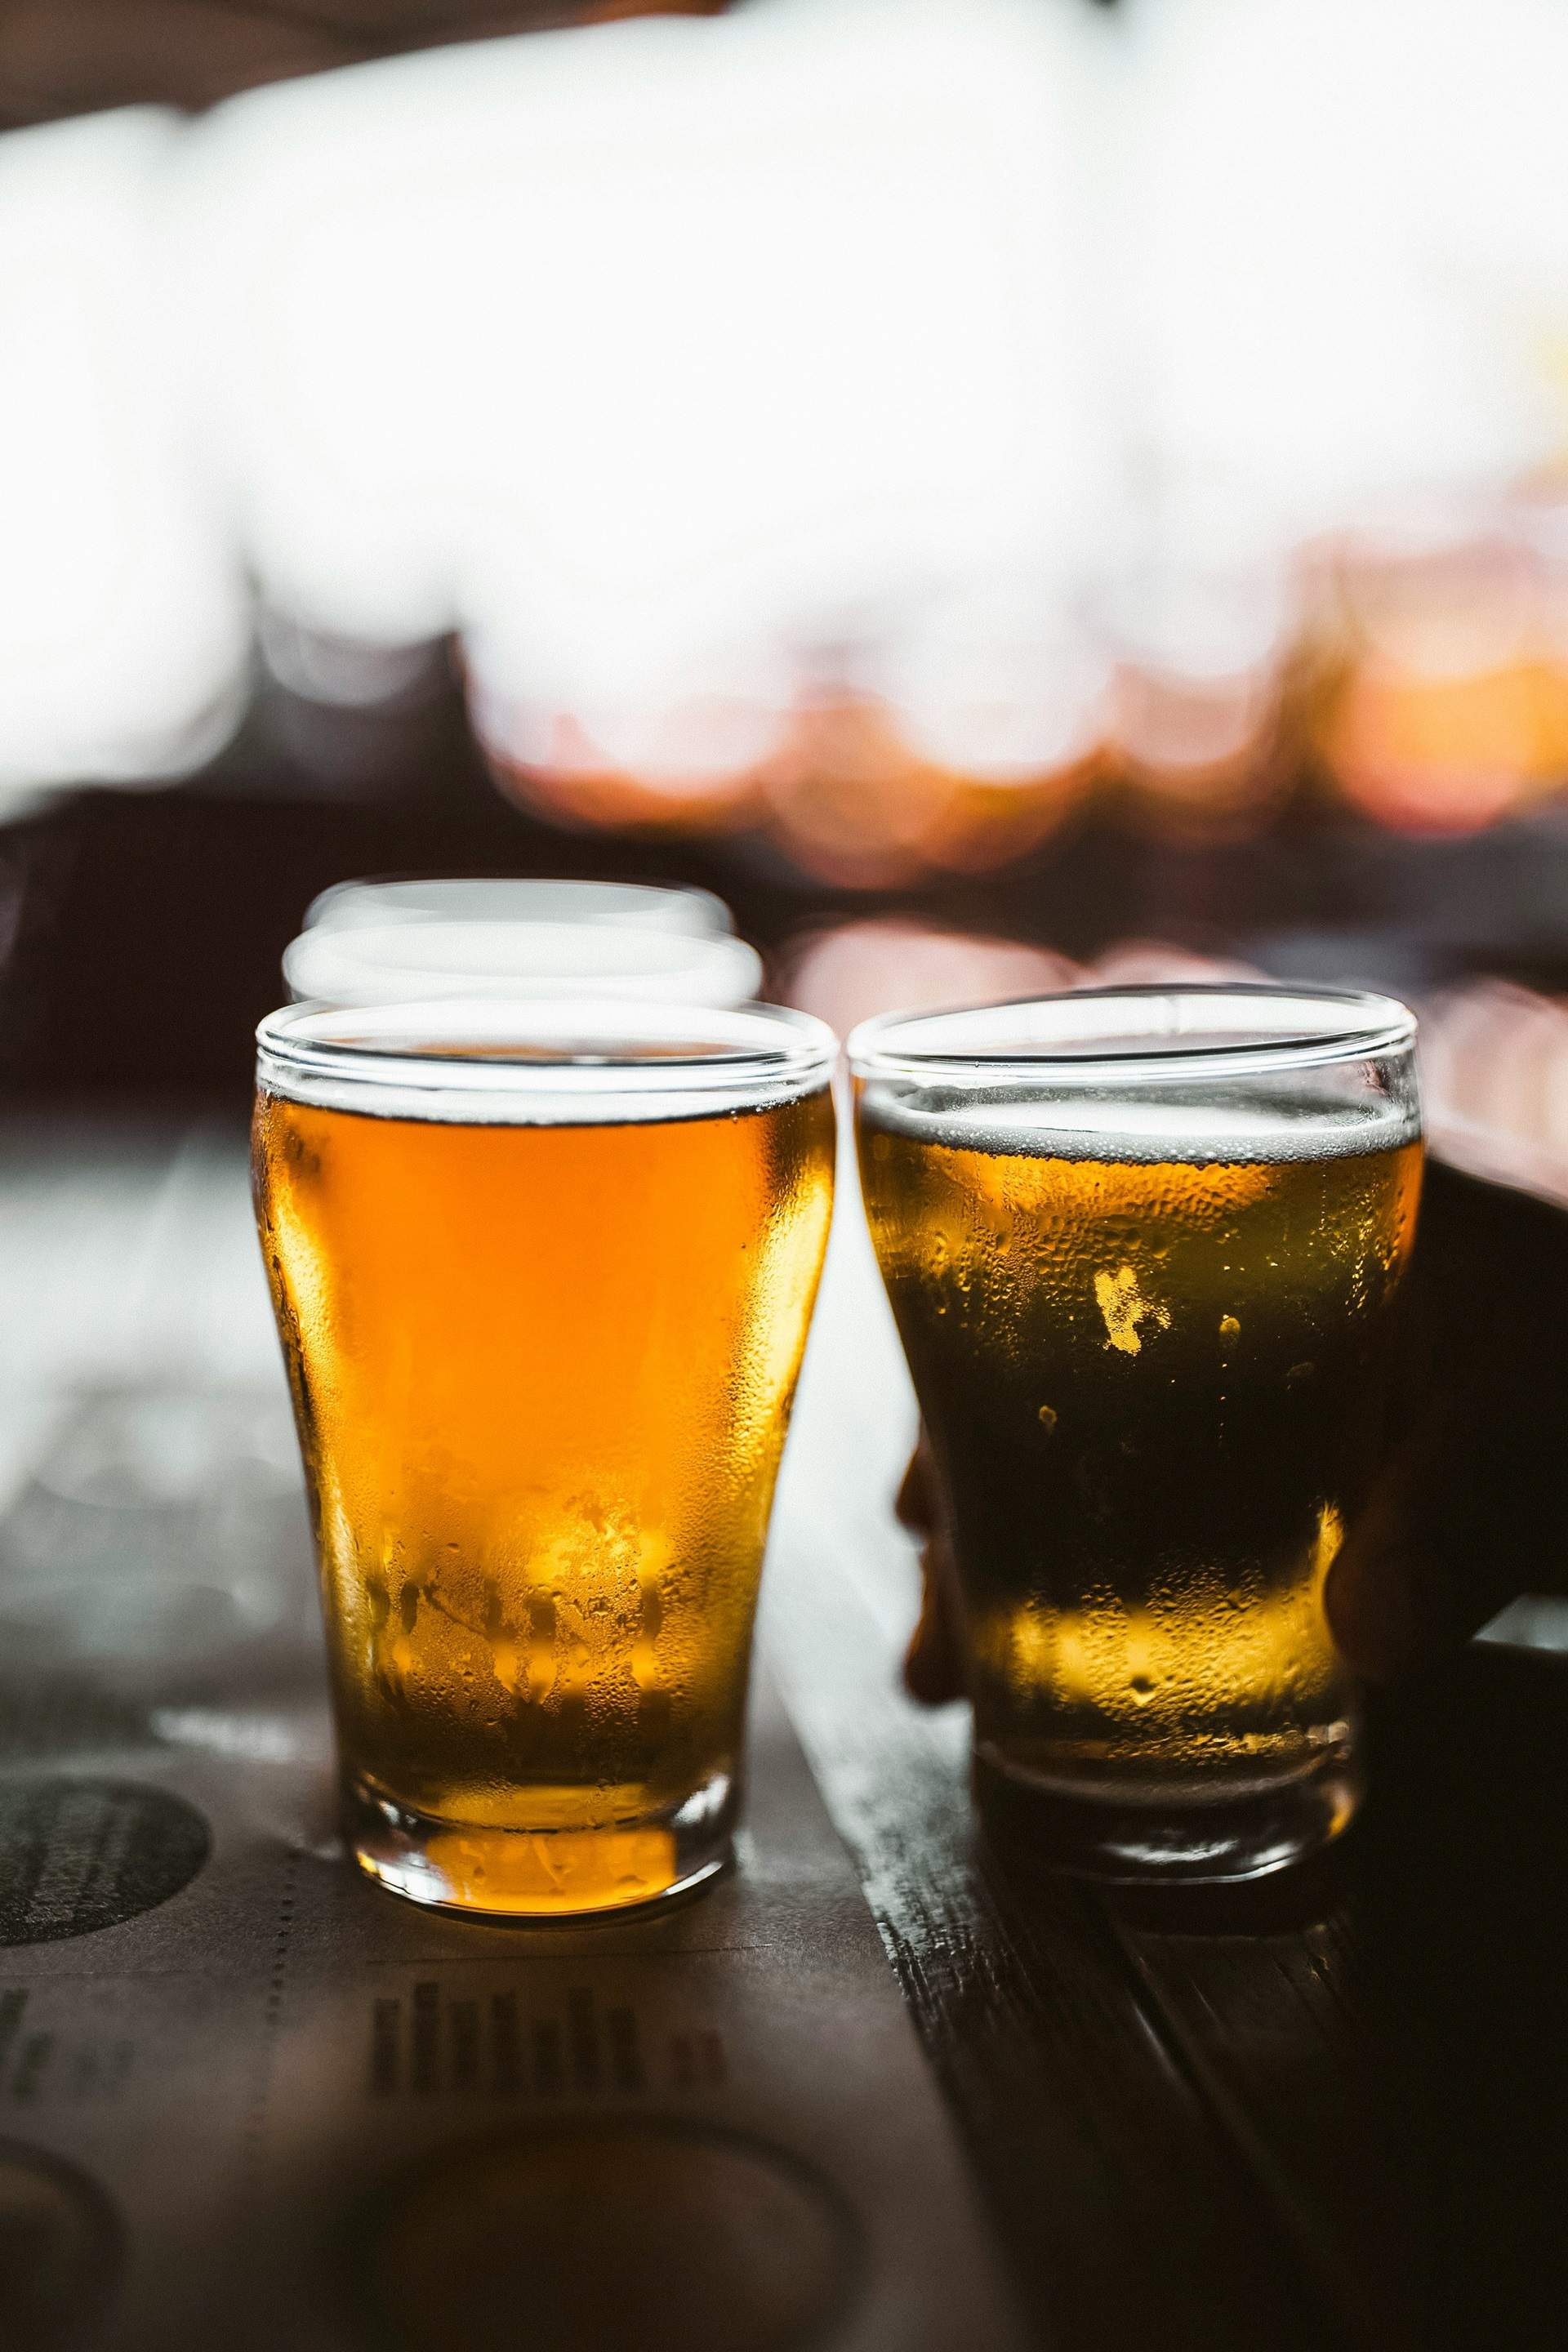 El truc dels bars perquè demanis més cervesa: ho pots evitar de manera fàcil!